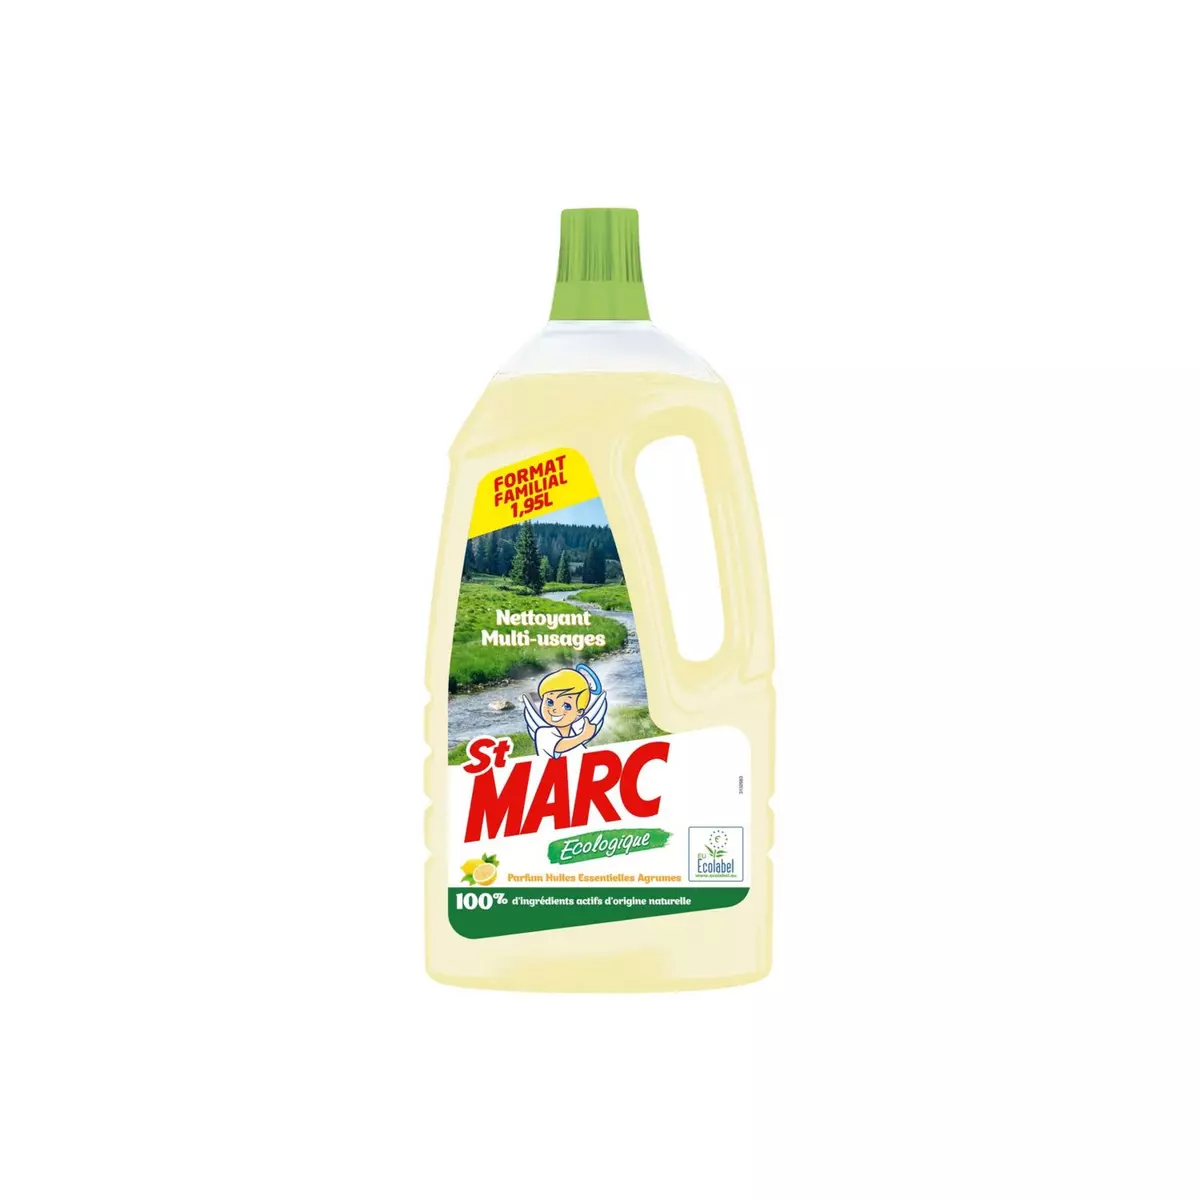 ST MARC Nettoyant multi-surface liquide écologique agrume 1,95l